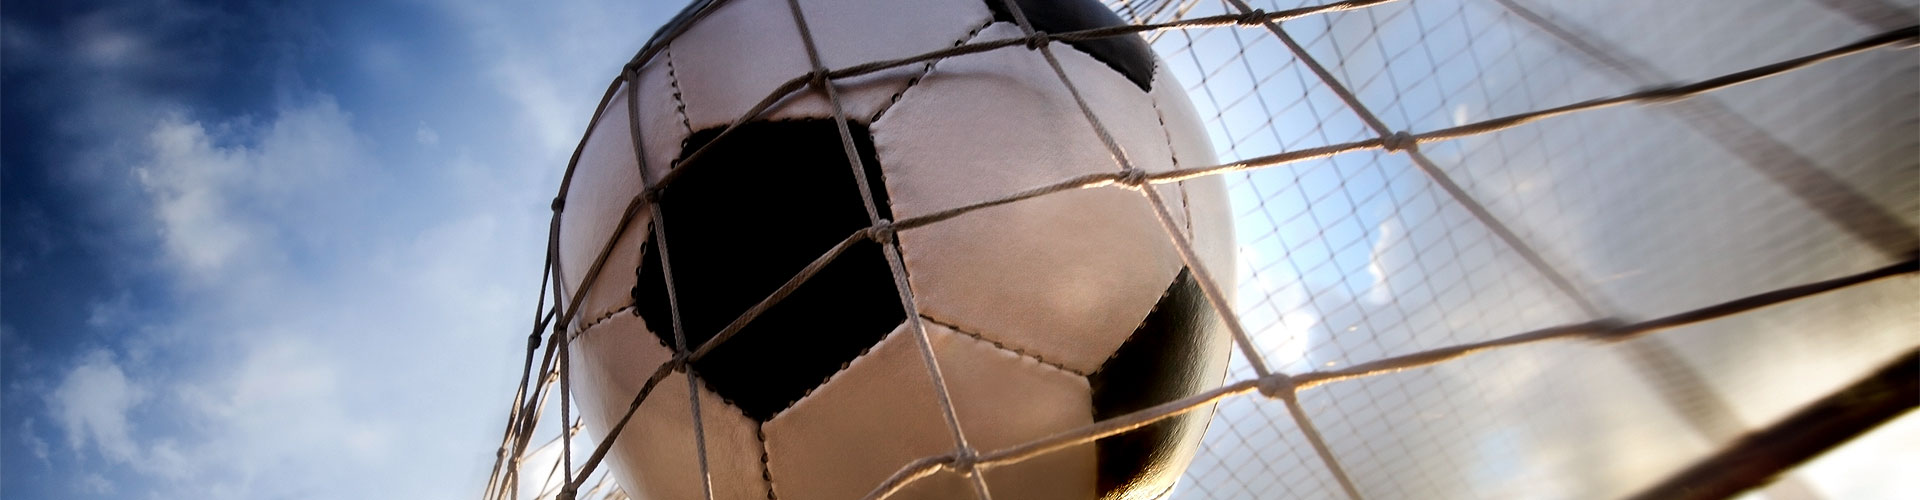 Ver la Eurocopa 2020 de fútbol en vivo en Rabé de las Calzadas